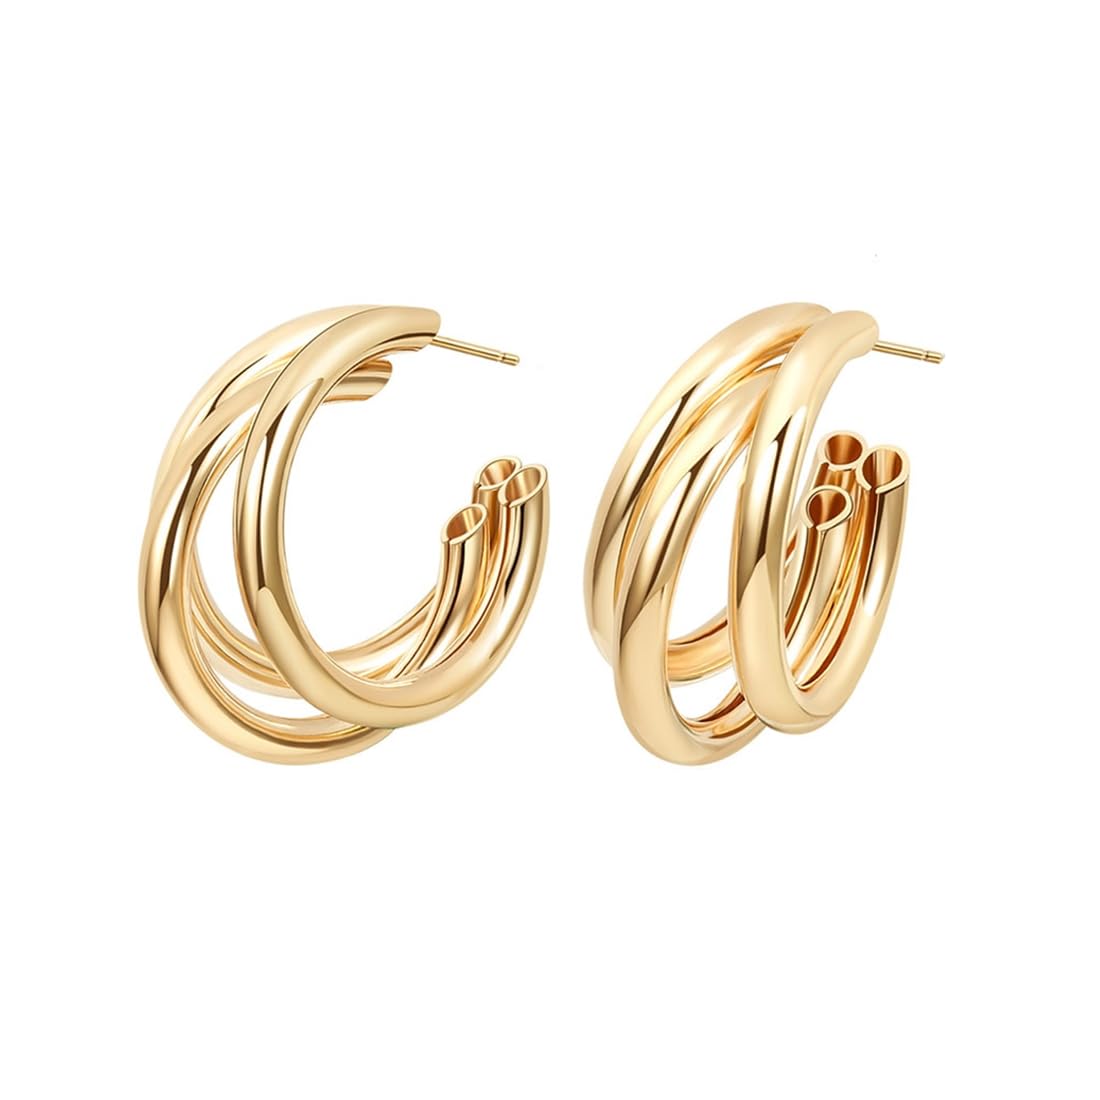 Kairangi Earrings for Women and Girls Golden Hoops Earrings | Gold Plated Layered Hoop Earrings for Women | Birthday Gift for girls and women Anniversary Gift for Wife